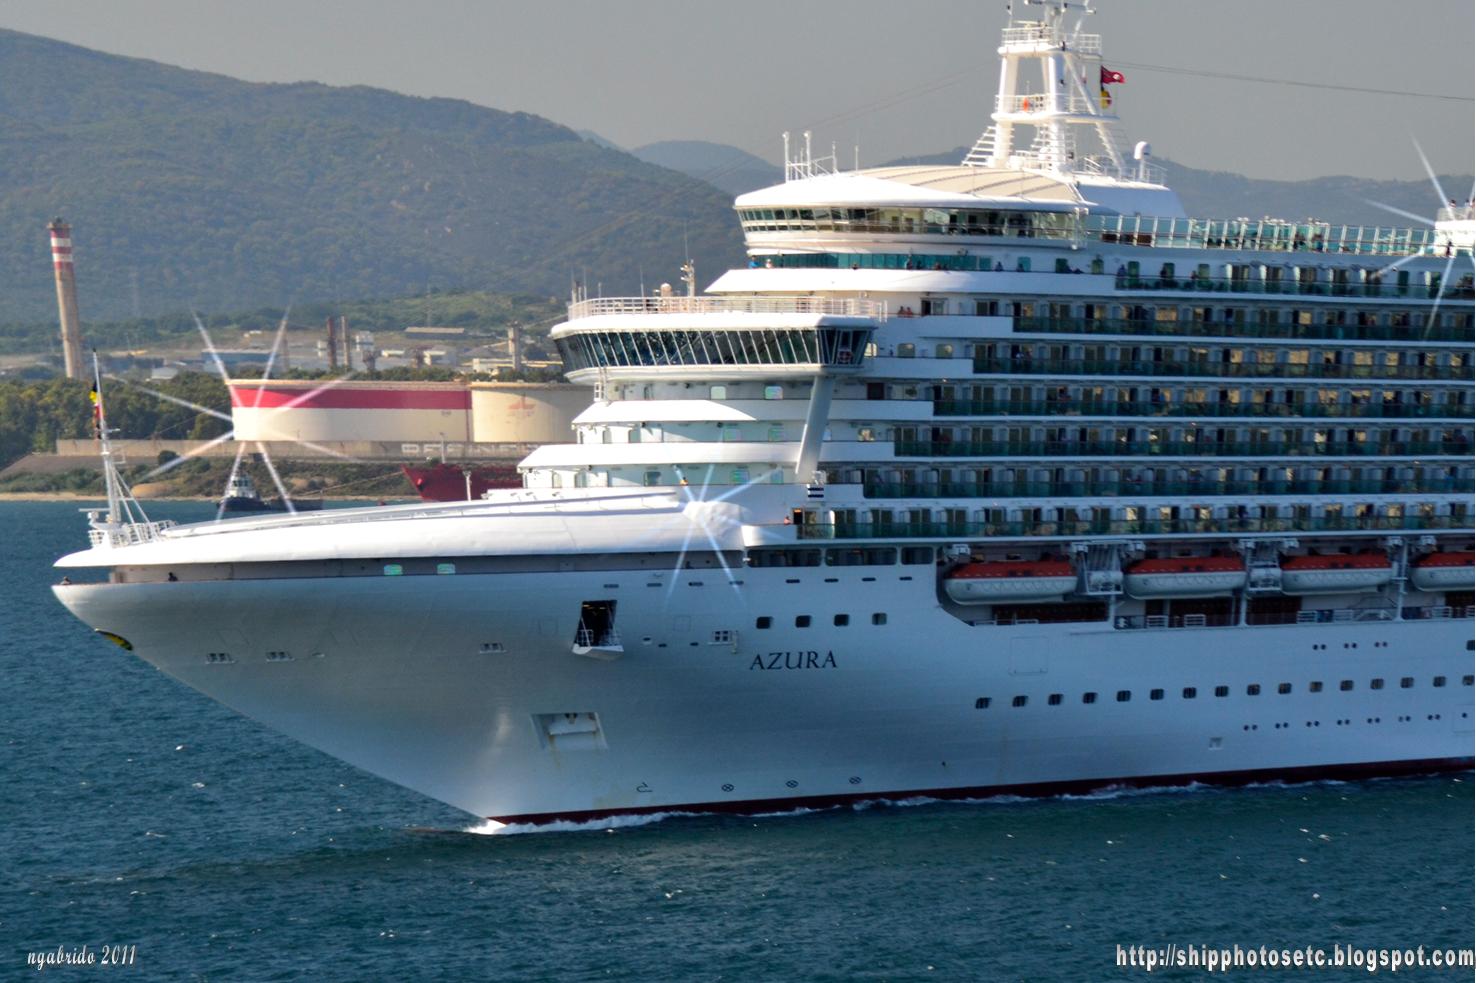 photos of azura cruise ship